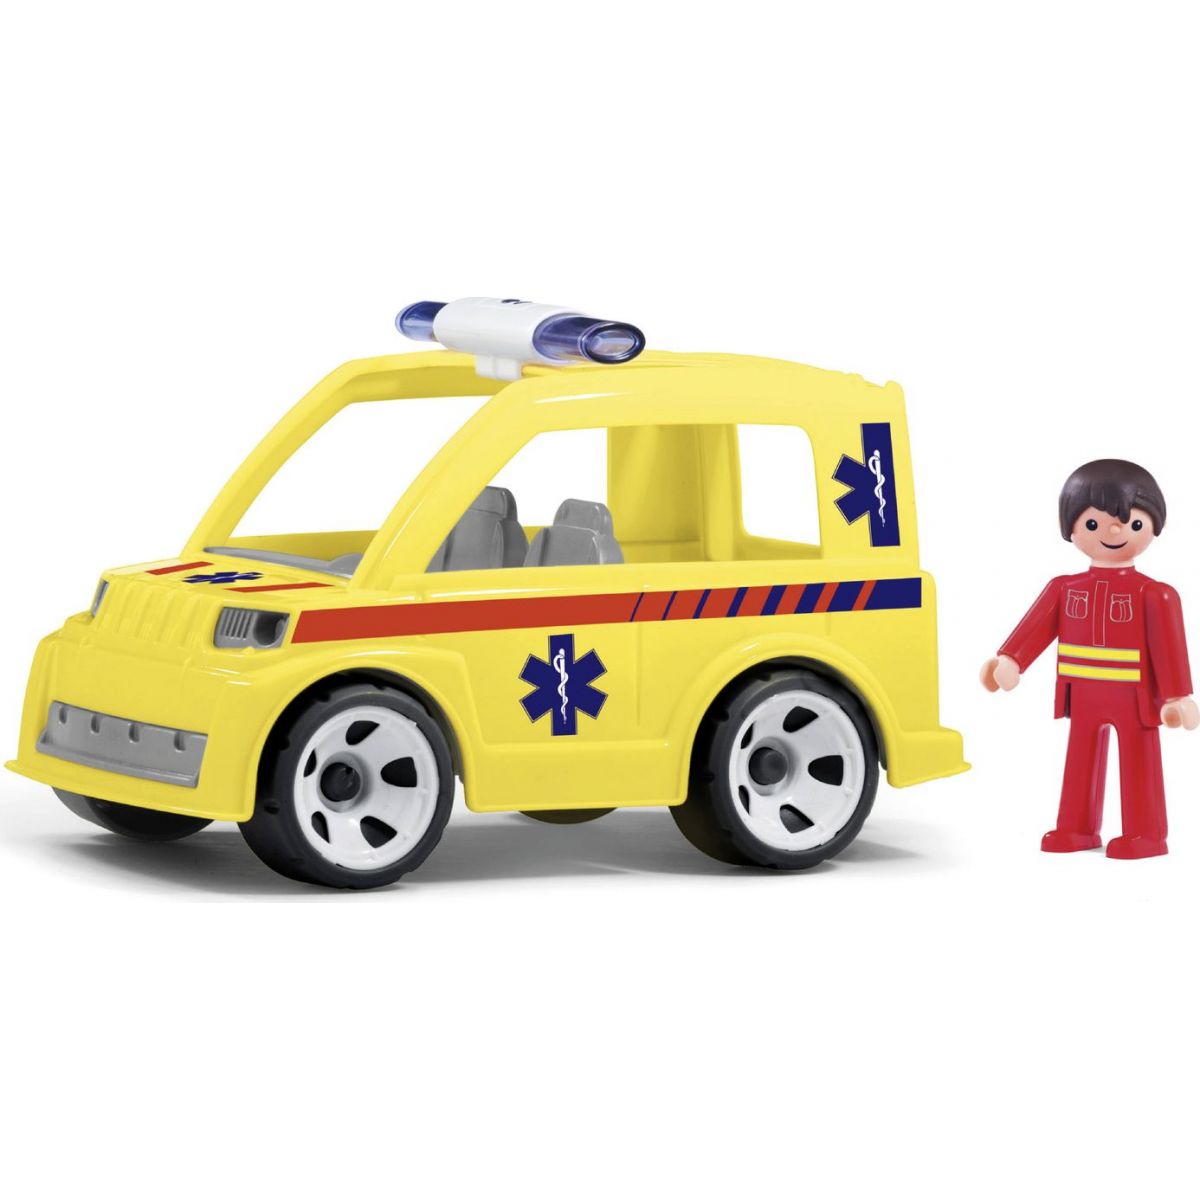 Igráček Ambulance se záchranářem